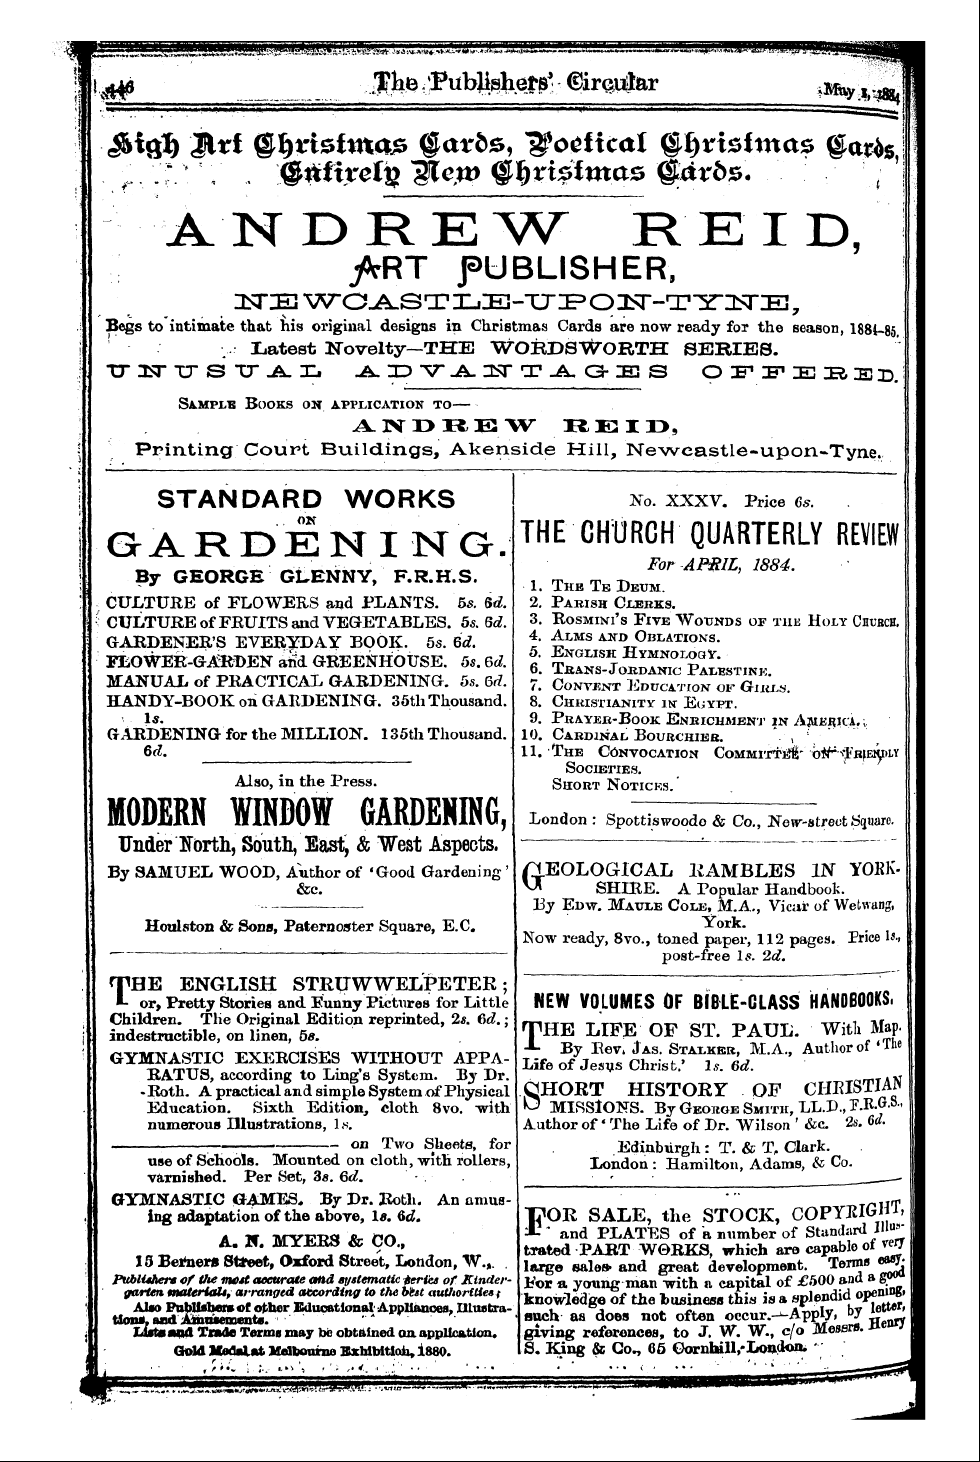 Publishers’ Circular (1880-1890): jS F Y, 1st edition - -Igjbjjjf-Sj^L^